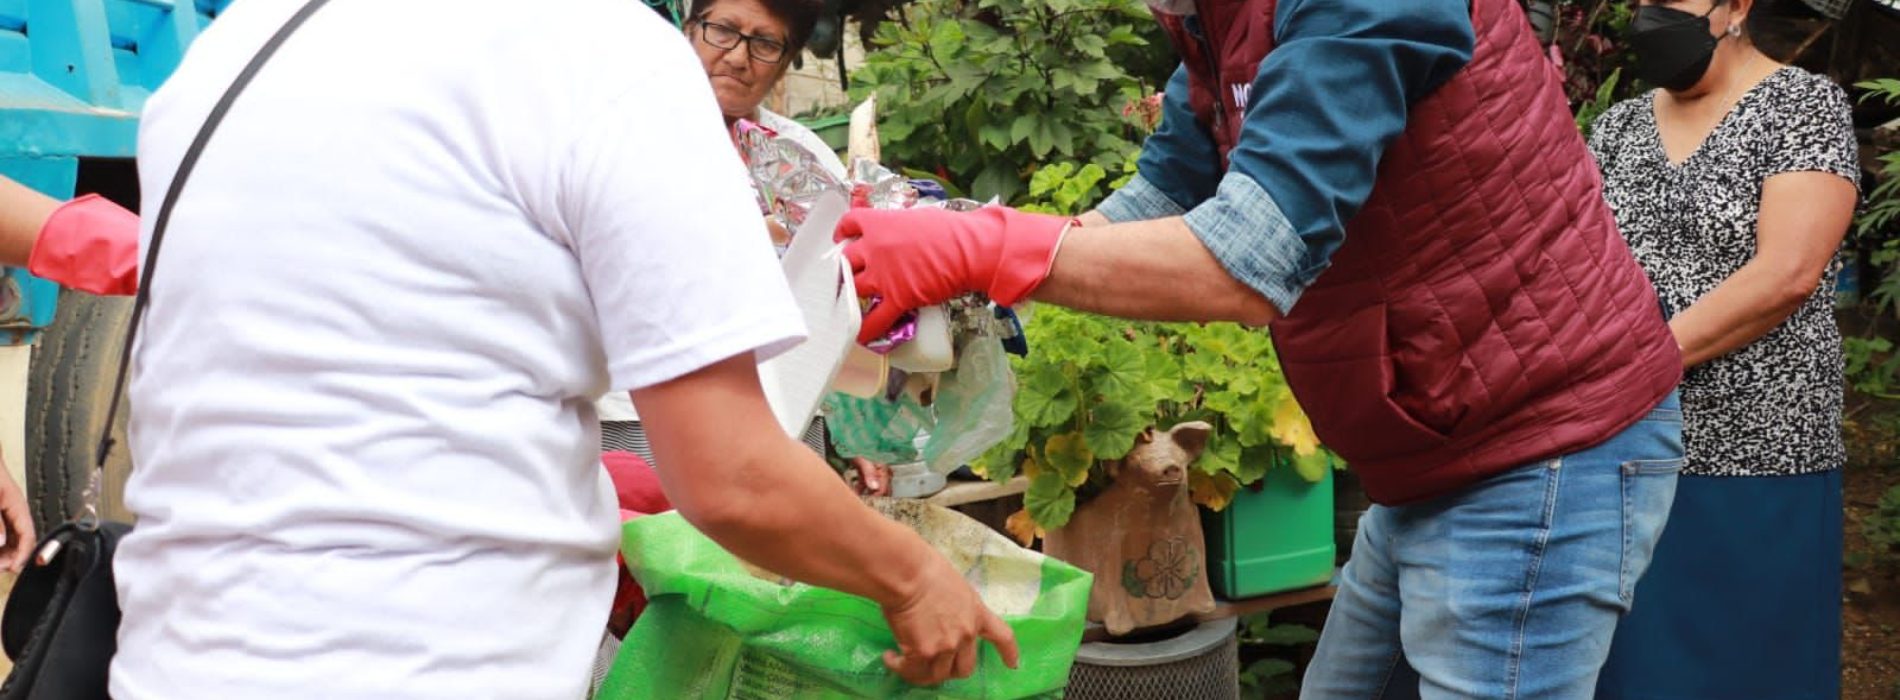 Arranca campaña «Mi colonia más limpia» en Pueblo Nuevo